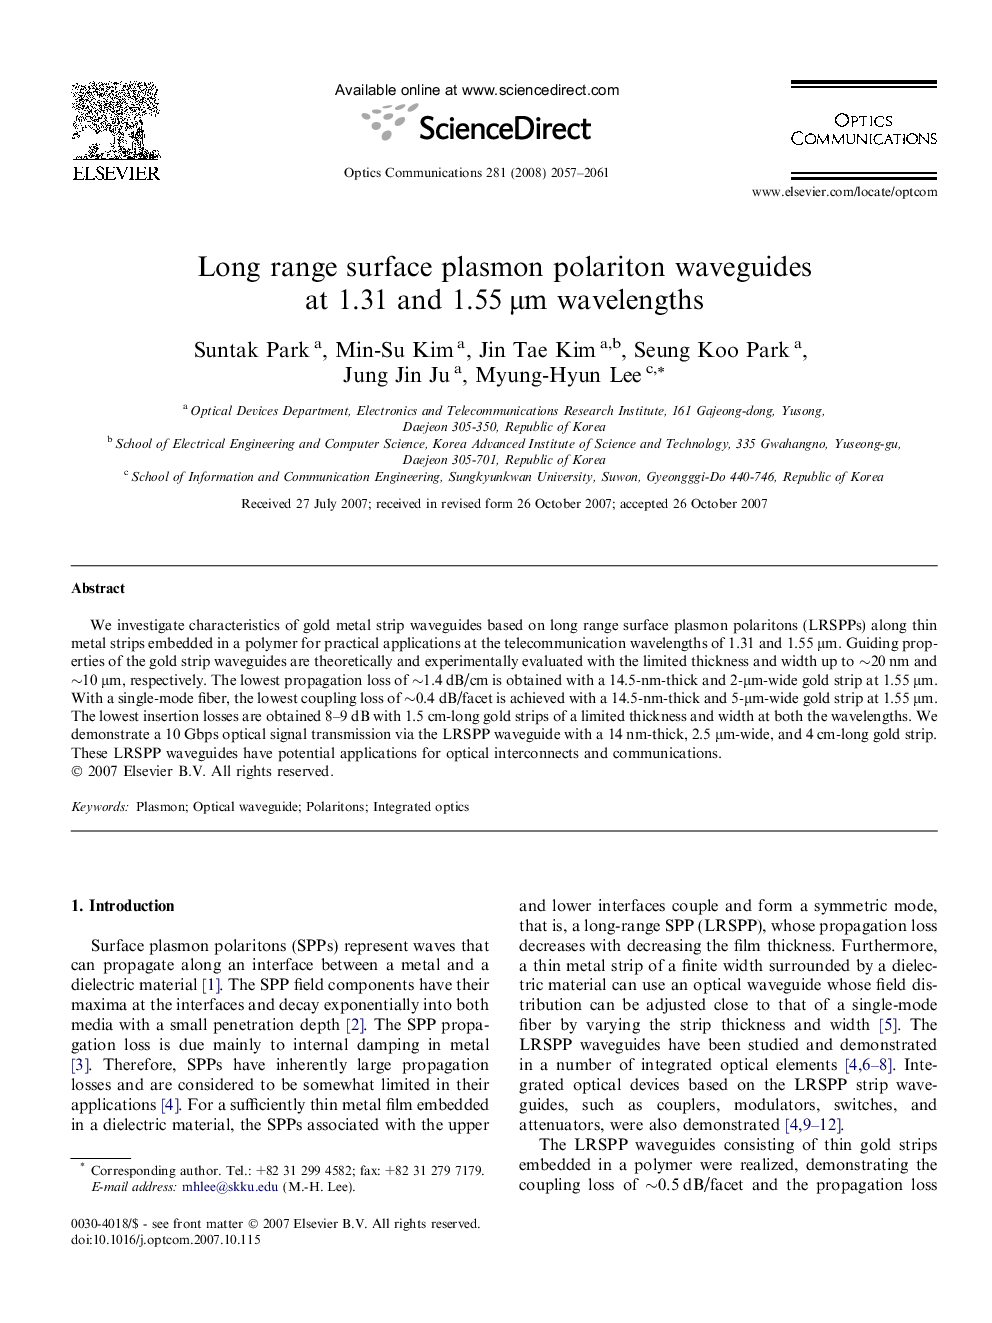 Long range surface plasmon polariton waveguides at 1.31 and 1.55 μm wavelengths